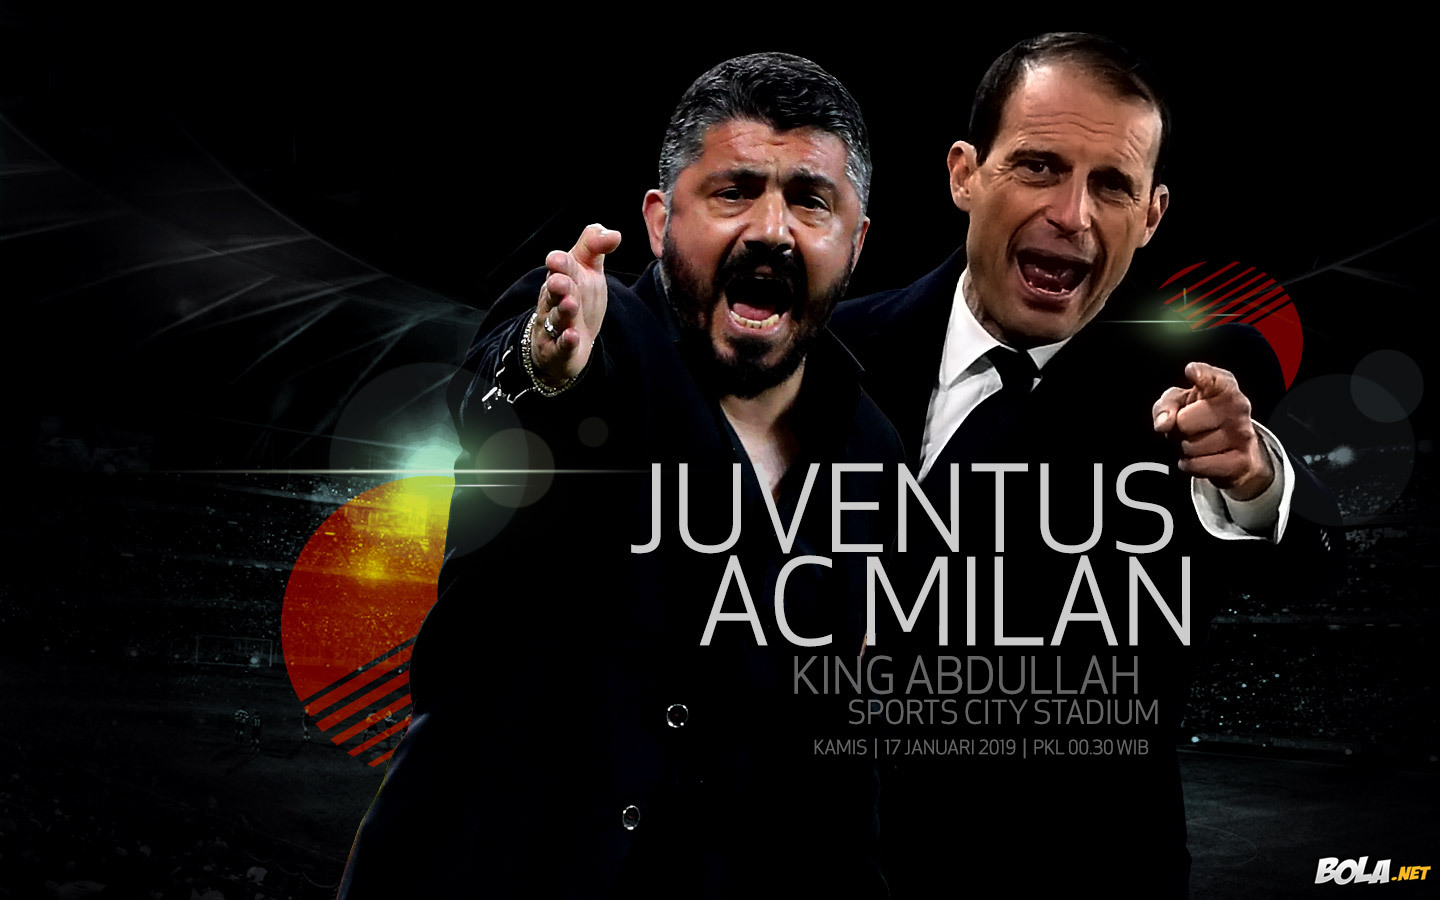 Deskripsi : Wallpaper Juventus Vs Ac Milan, size: 1440x900